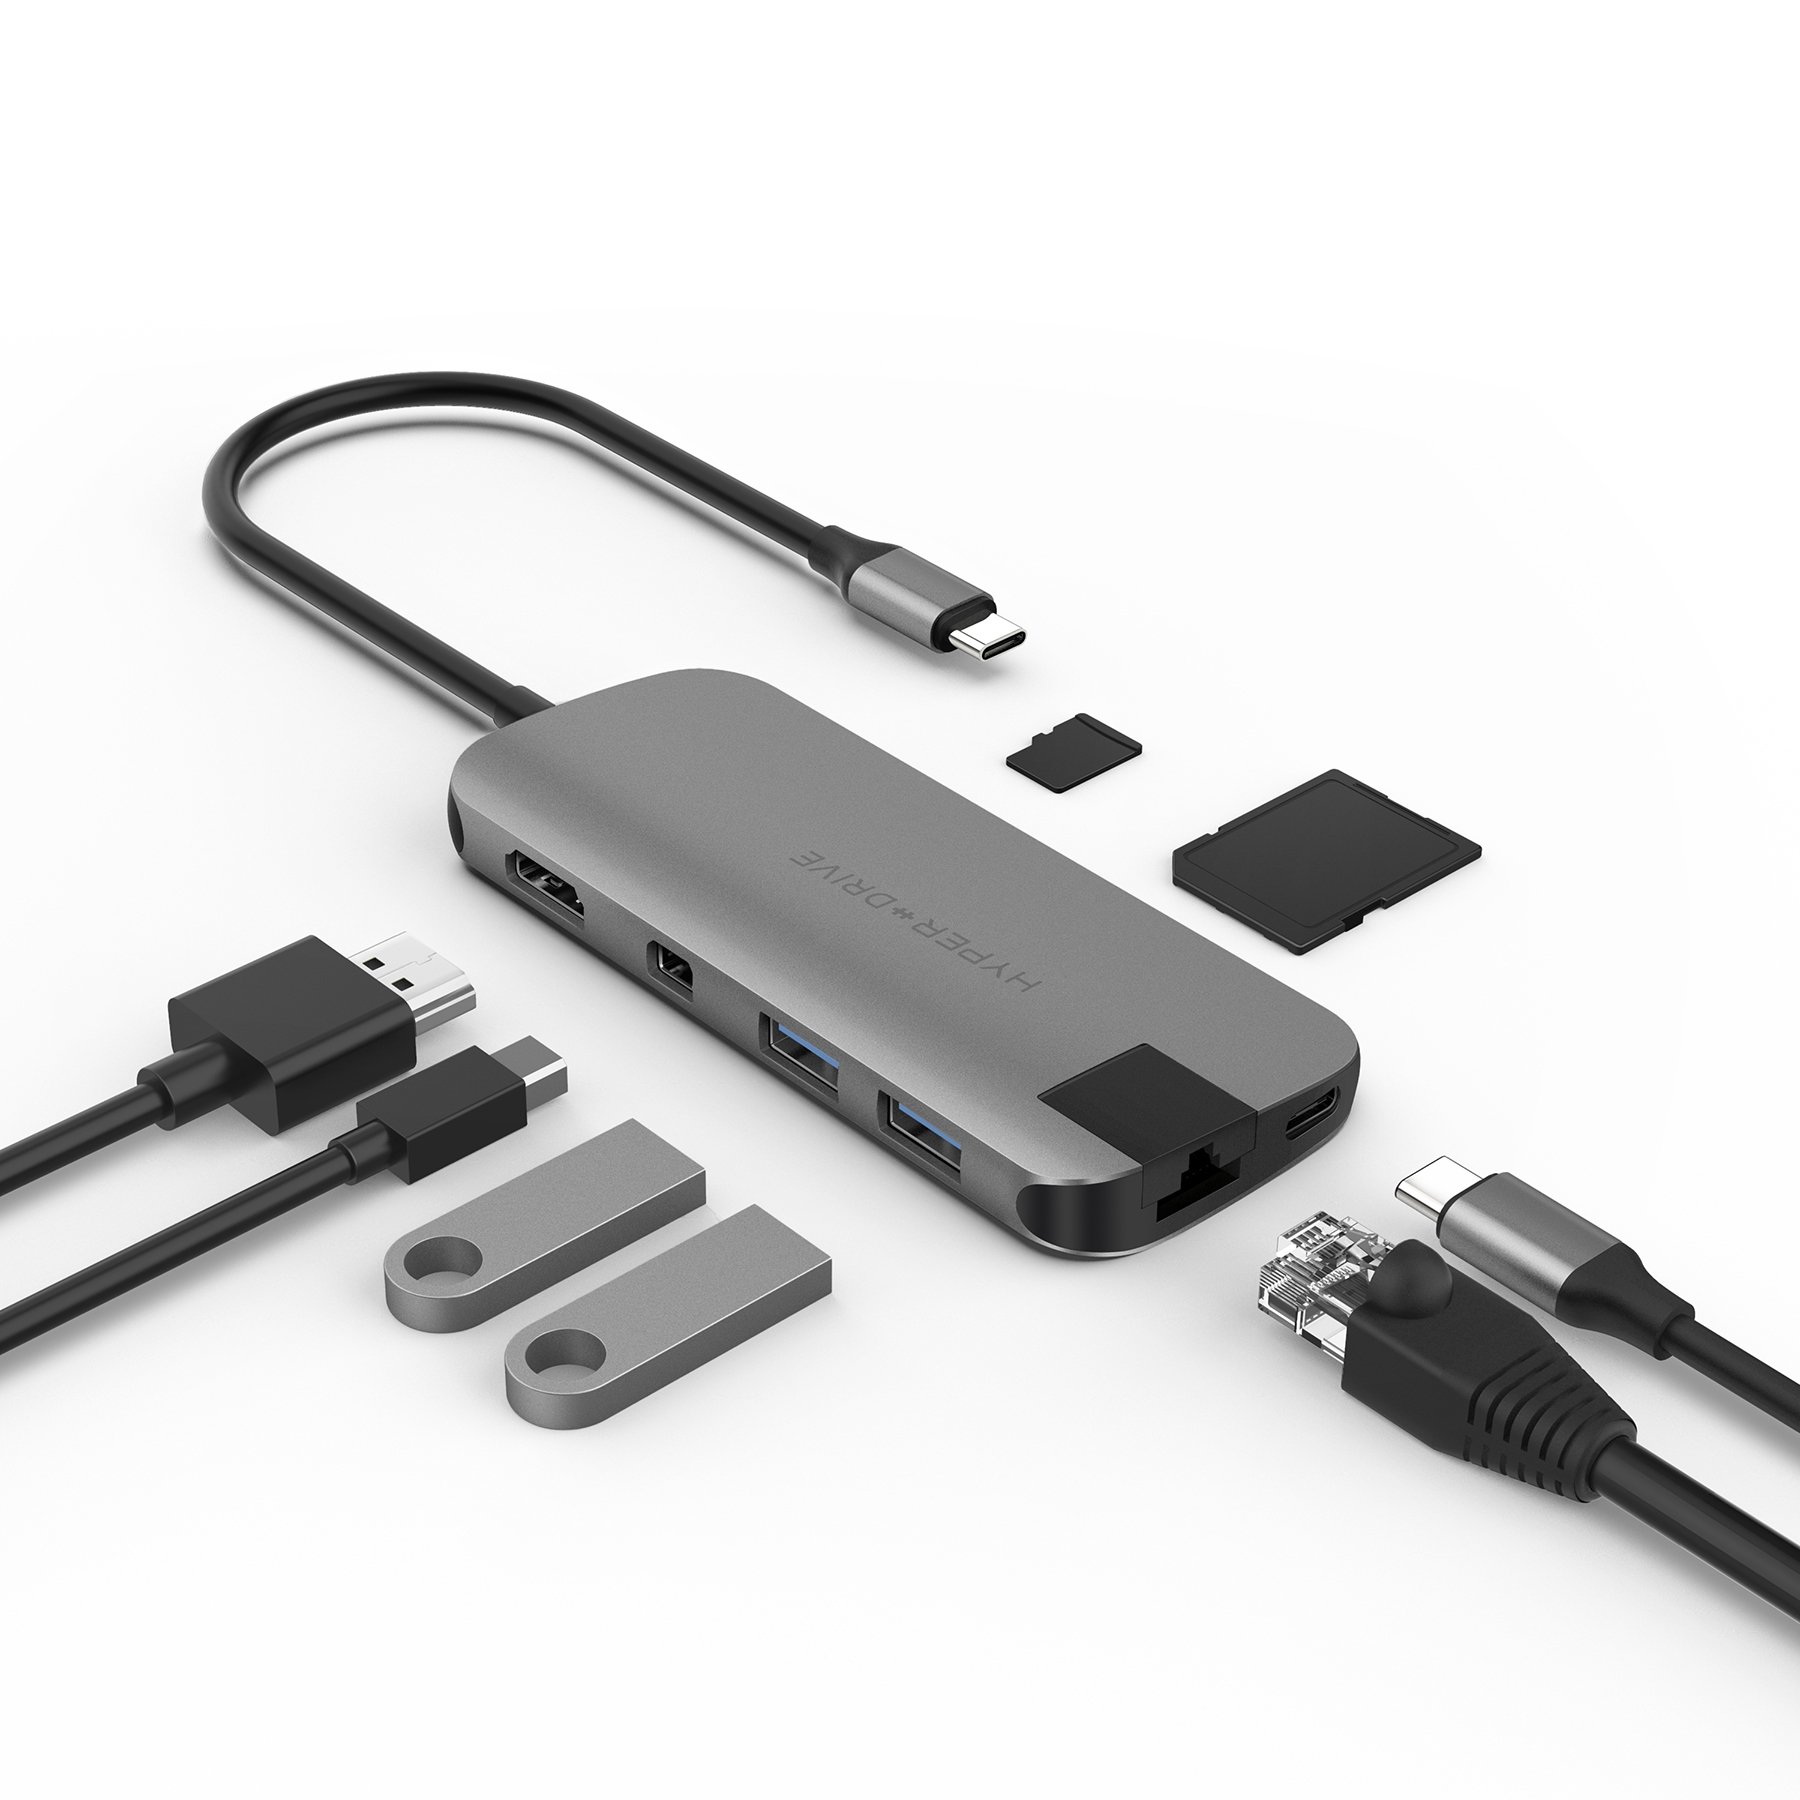 CỔNG CHUYỂN HYPERDRIVE SLIM 8 IN 1 USB-C HUB FOR MACBOOK, SURFACE, PC & DEVICES – HD247B - HÀNG CHÍNH HÃNG